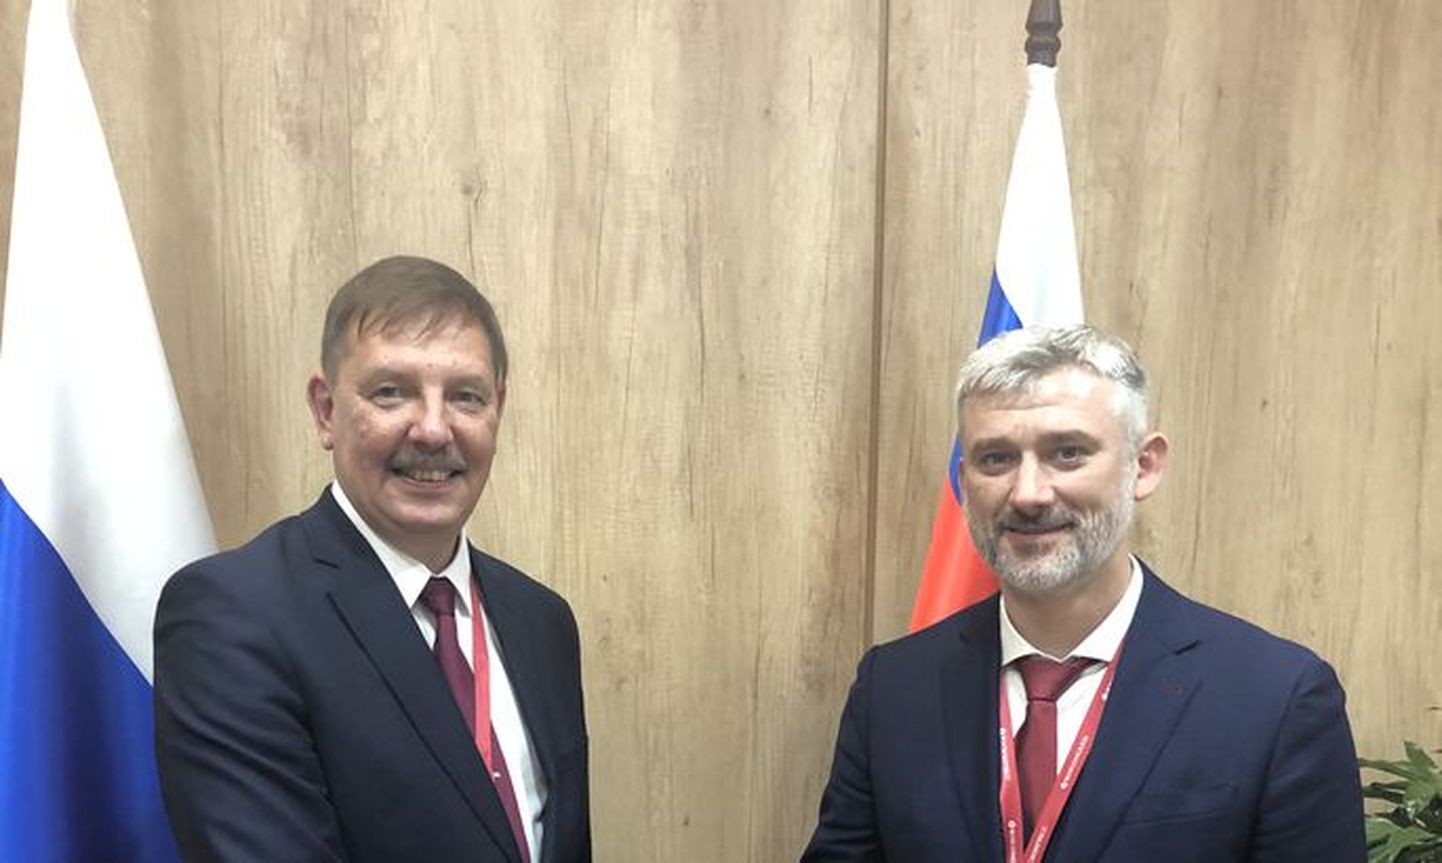 Министр экономики и инфраструктуры Таави Аас встретился в Петербурге с министром транспорта России Евгением Дитрихом.